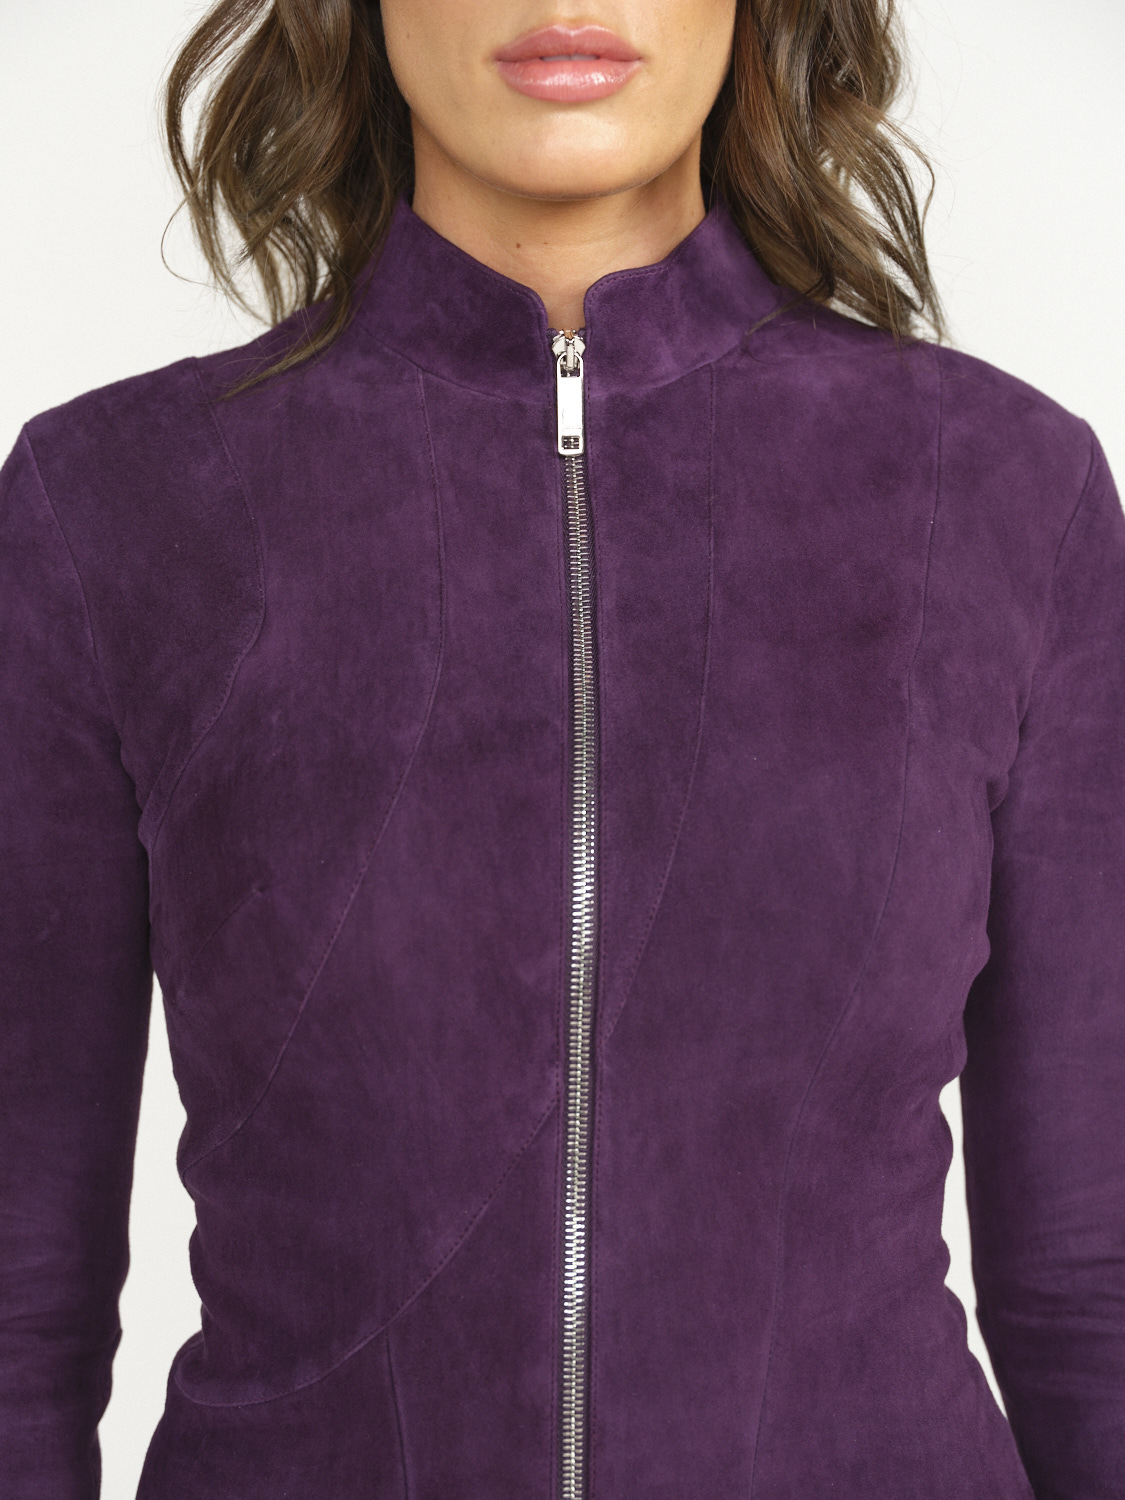 jitrois Ayna - Veste avec coutures cintrées et col montant violet 40